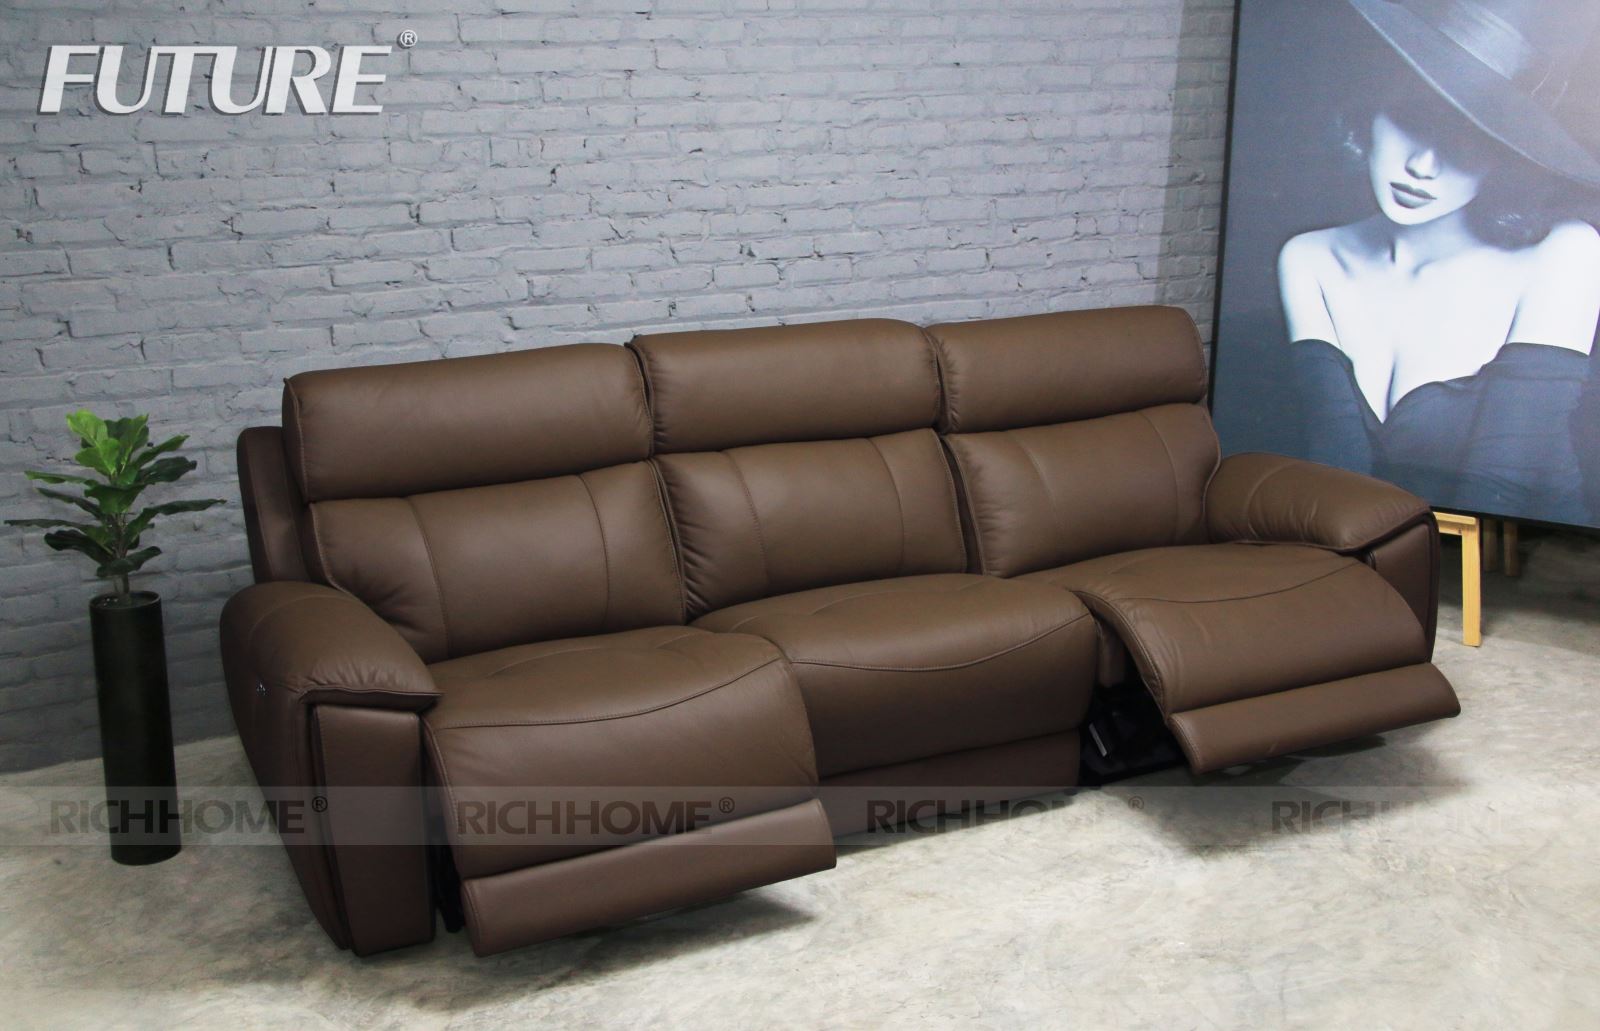 Phòng khách nổi bật với những mẫu ghế sofa da màu nâu hiện đại - Ảnh 3